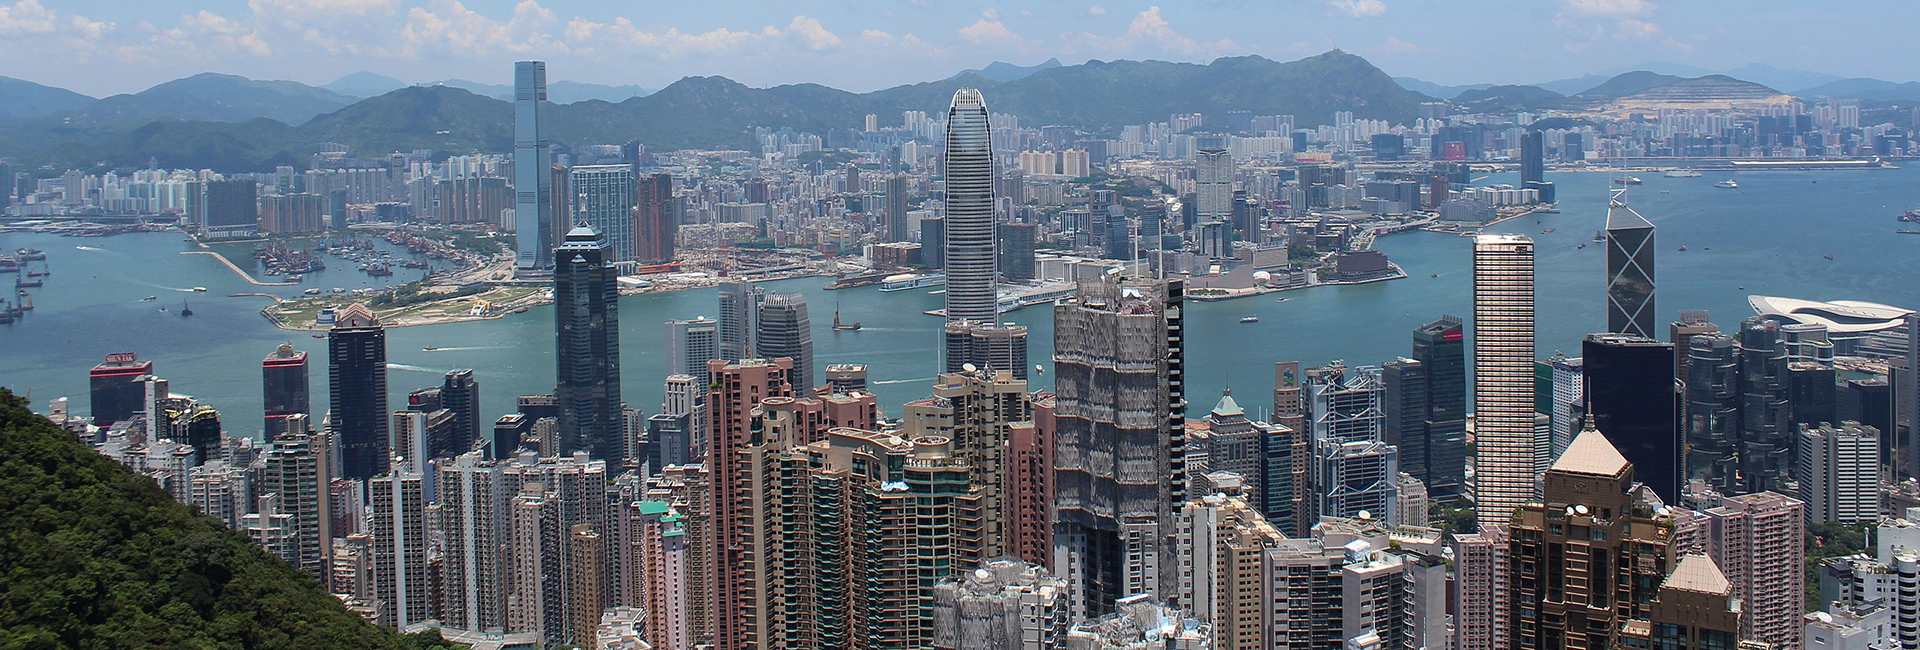 The expat life in The Peak, Hong Kong